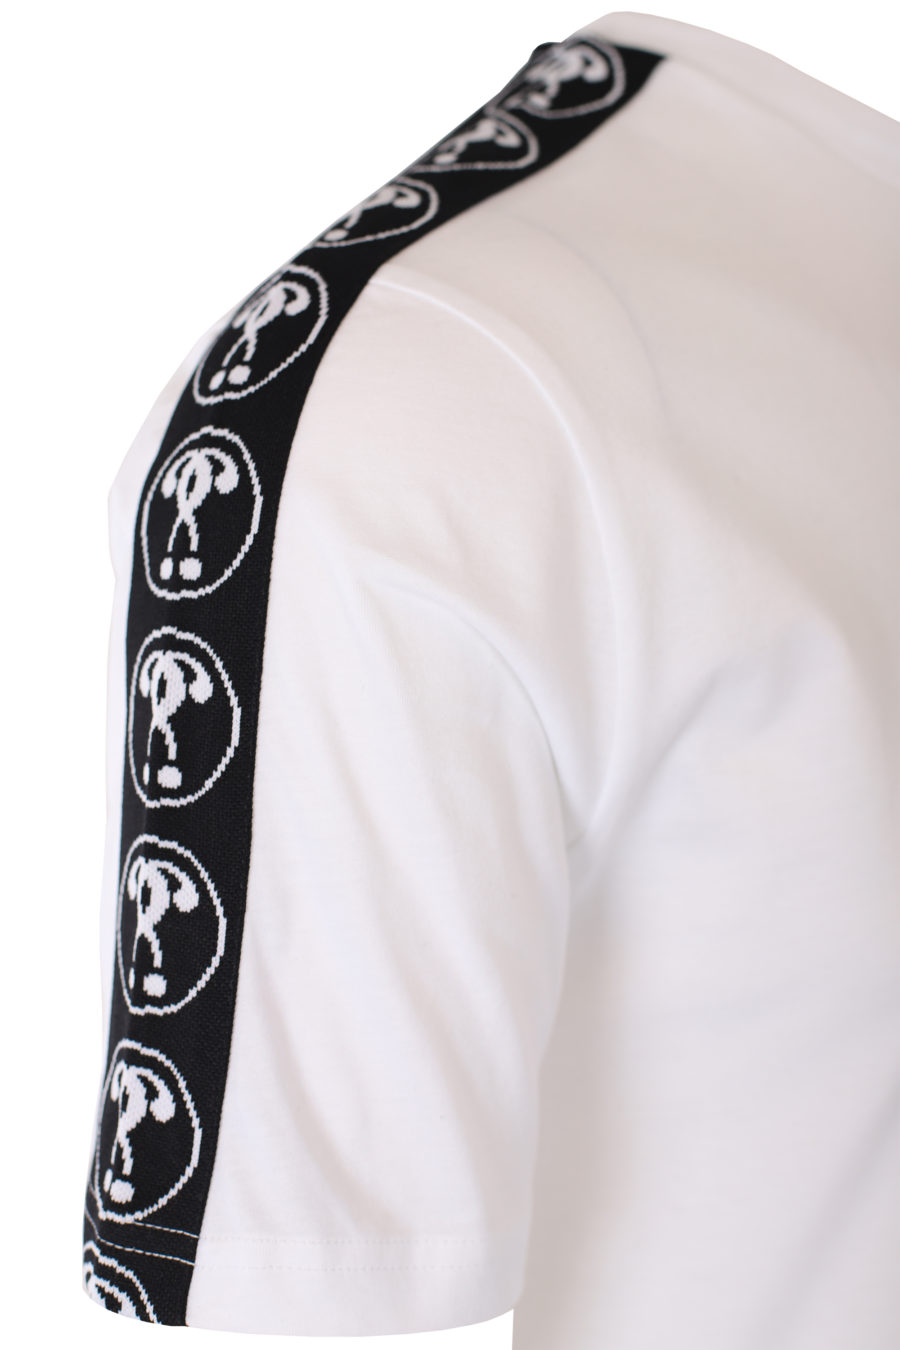 Camiseta blanca con logo doble pregunta pequeño y cinta en mangas - IMG 9332